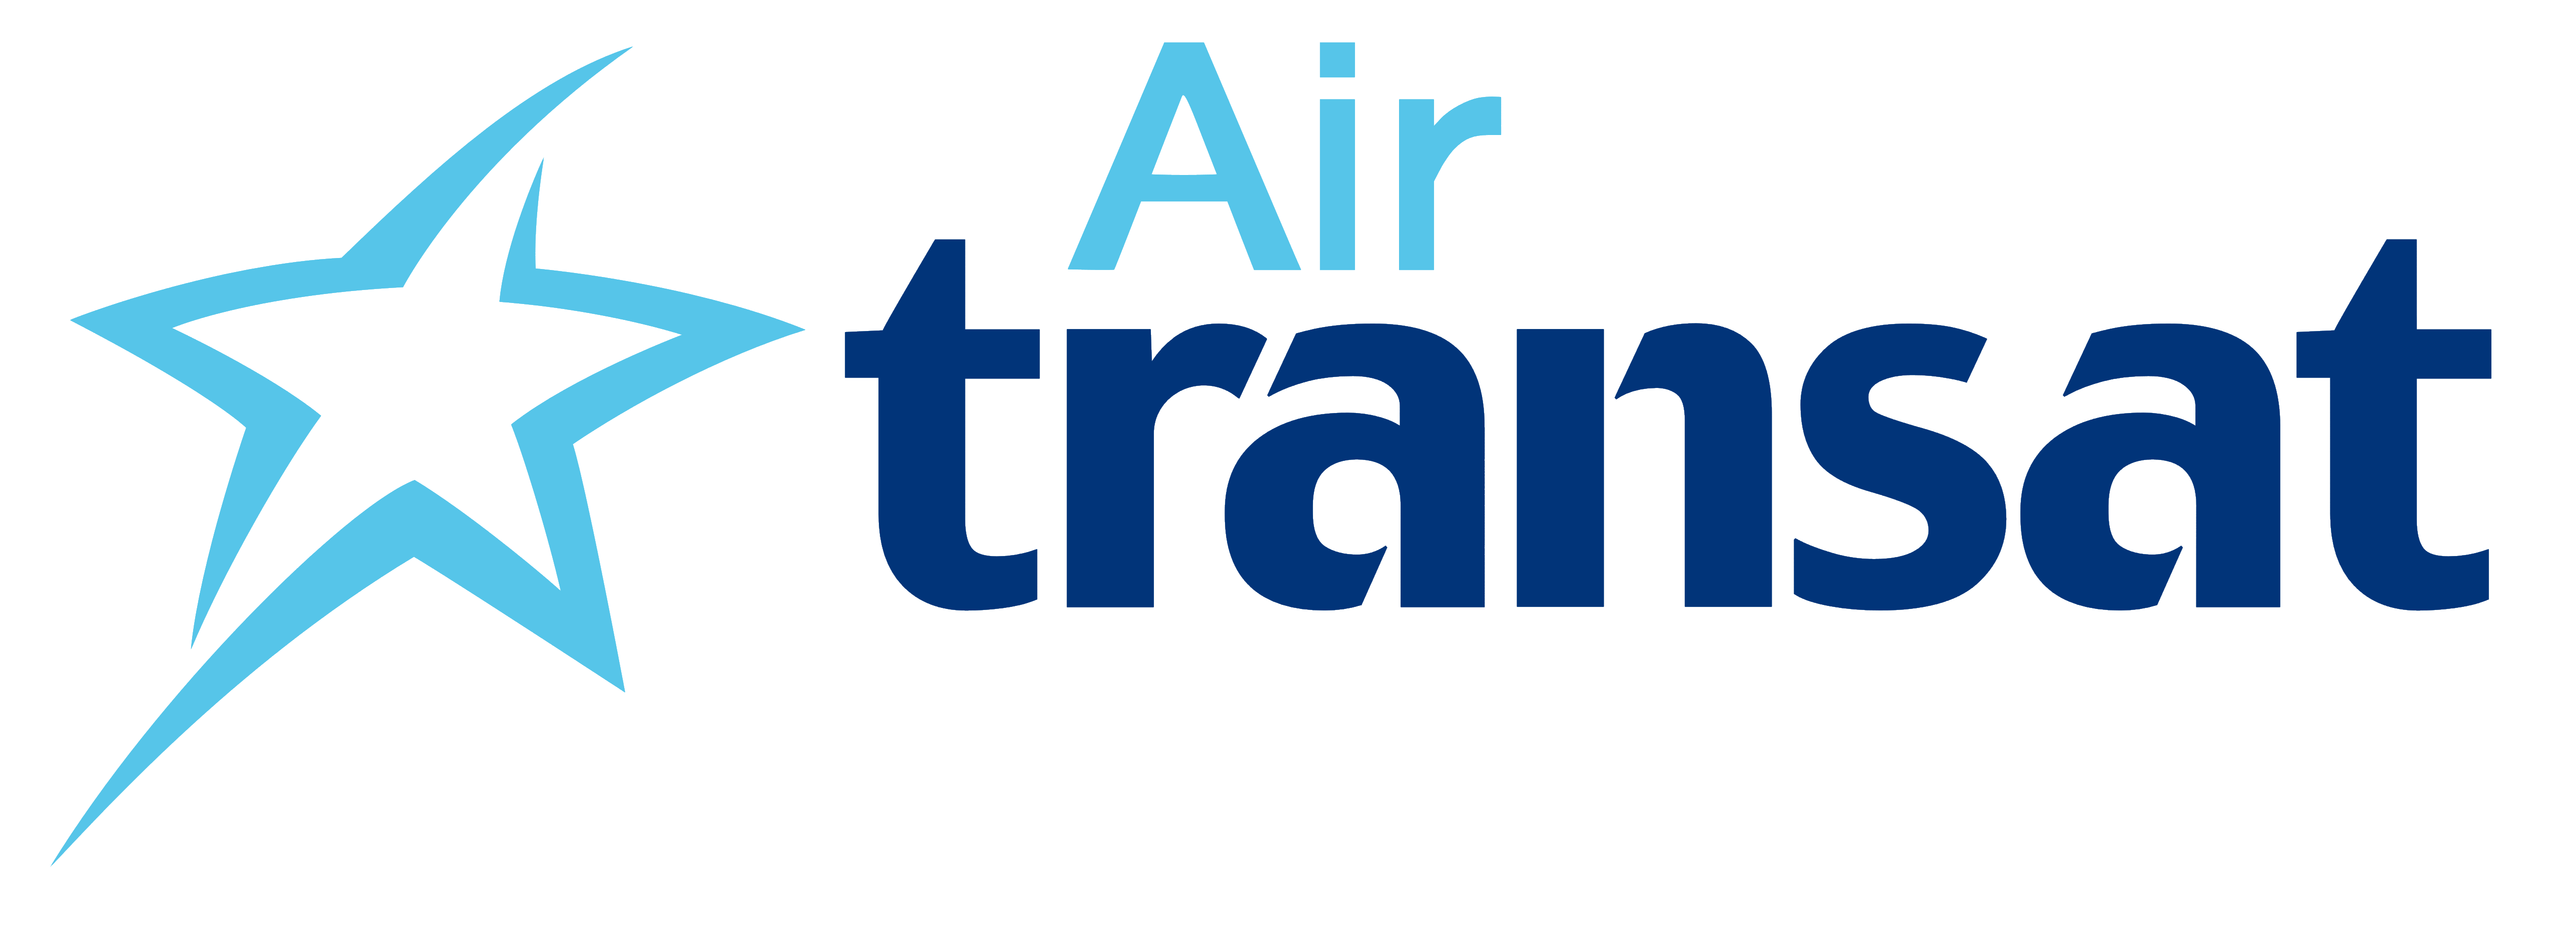 Air Transat logo, logotype